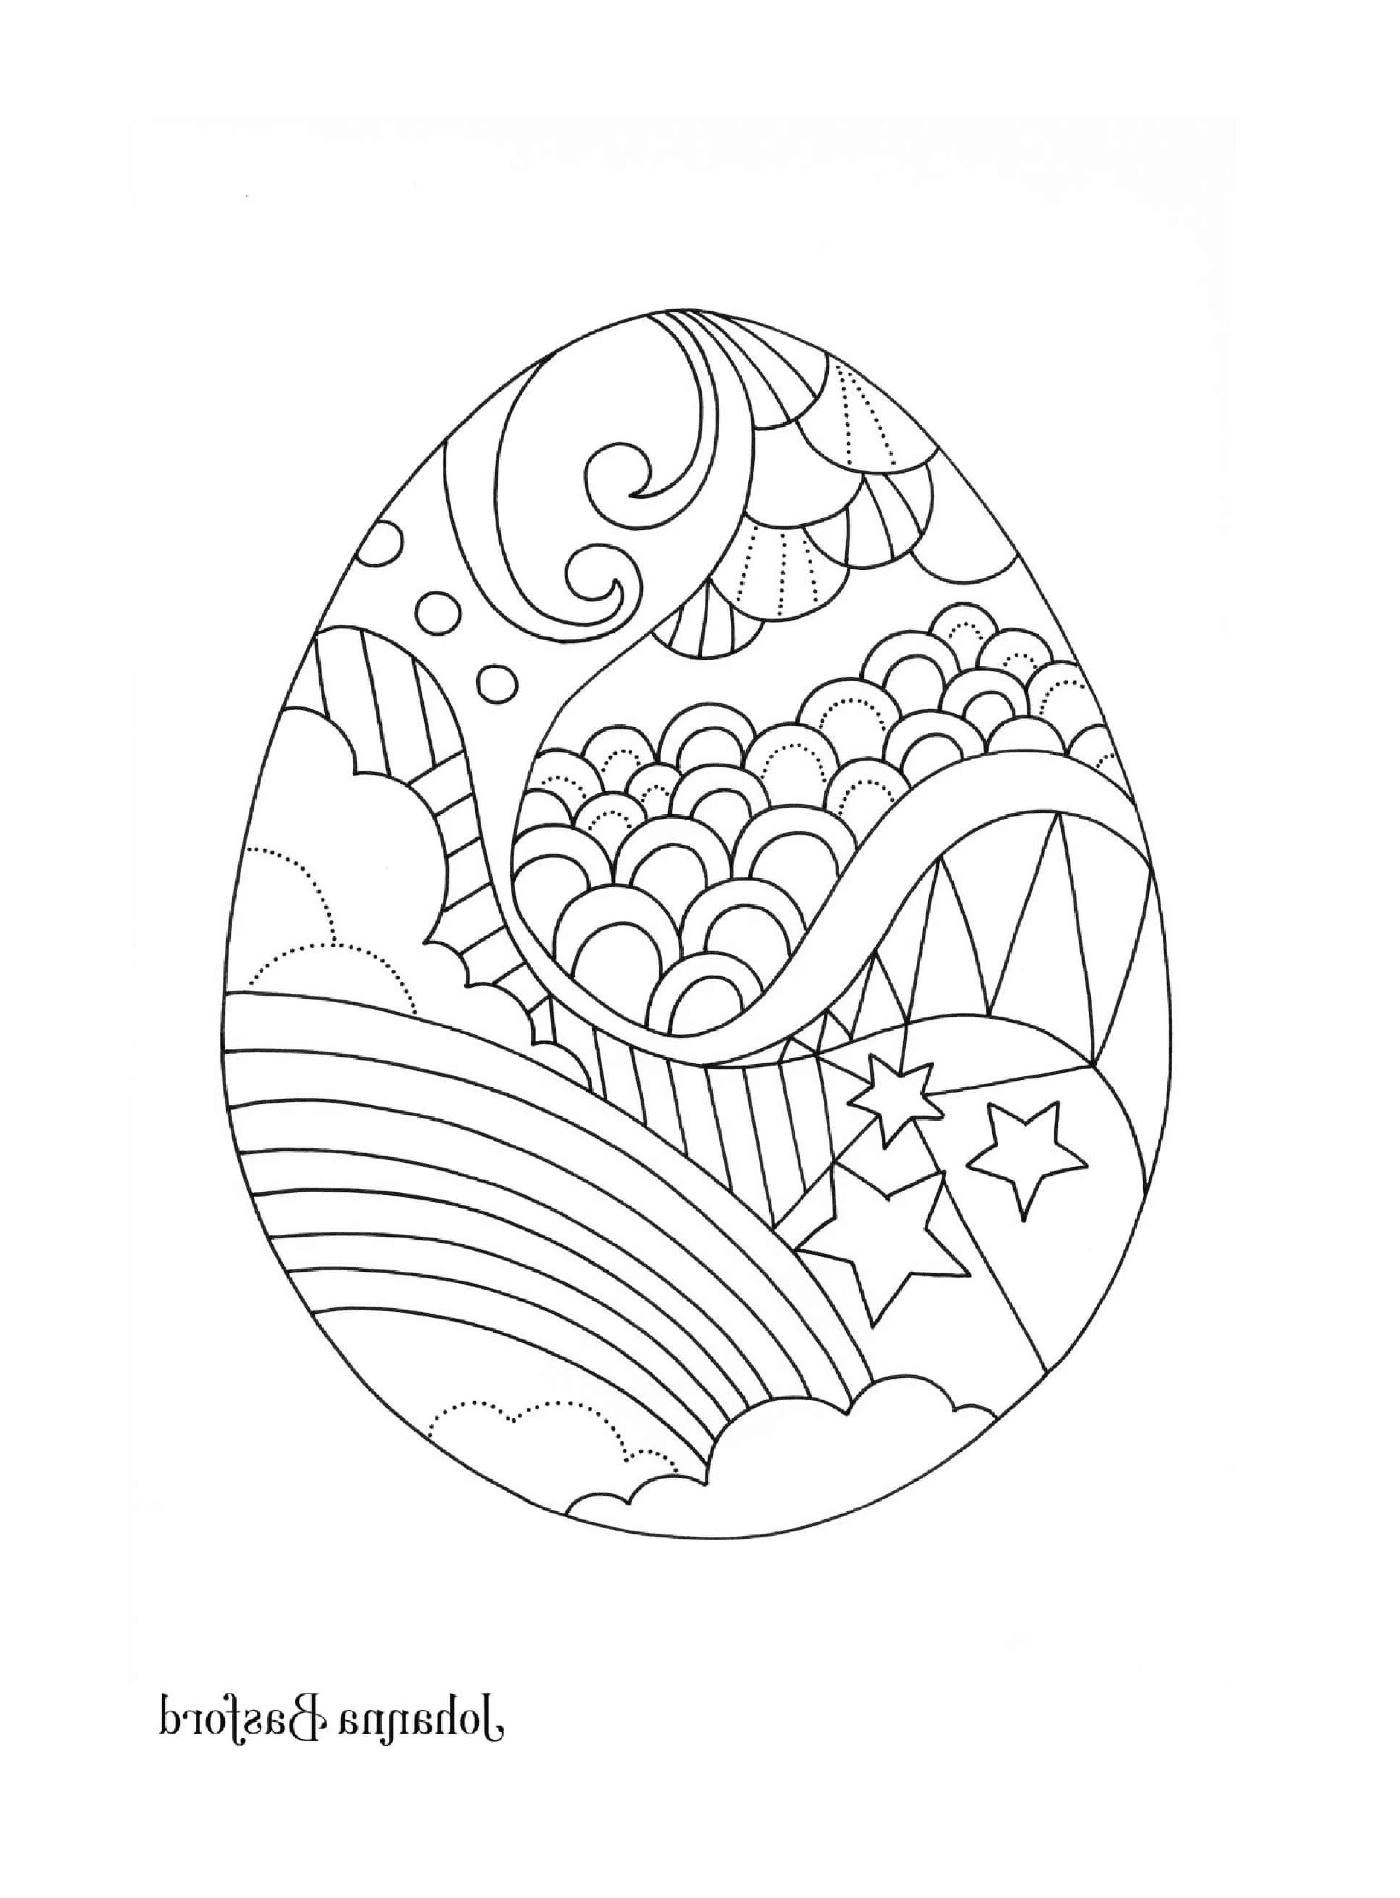   Un œuf de Pâques décoré avec un arc-en-ciel, des nuages, des étoiles et d'autres motifs 